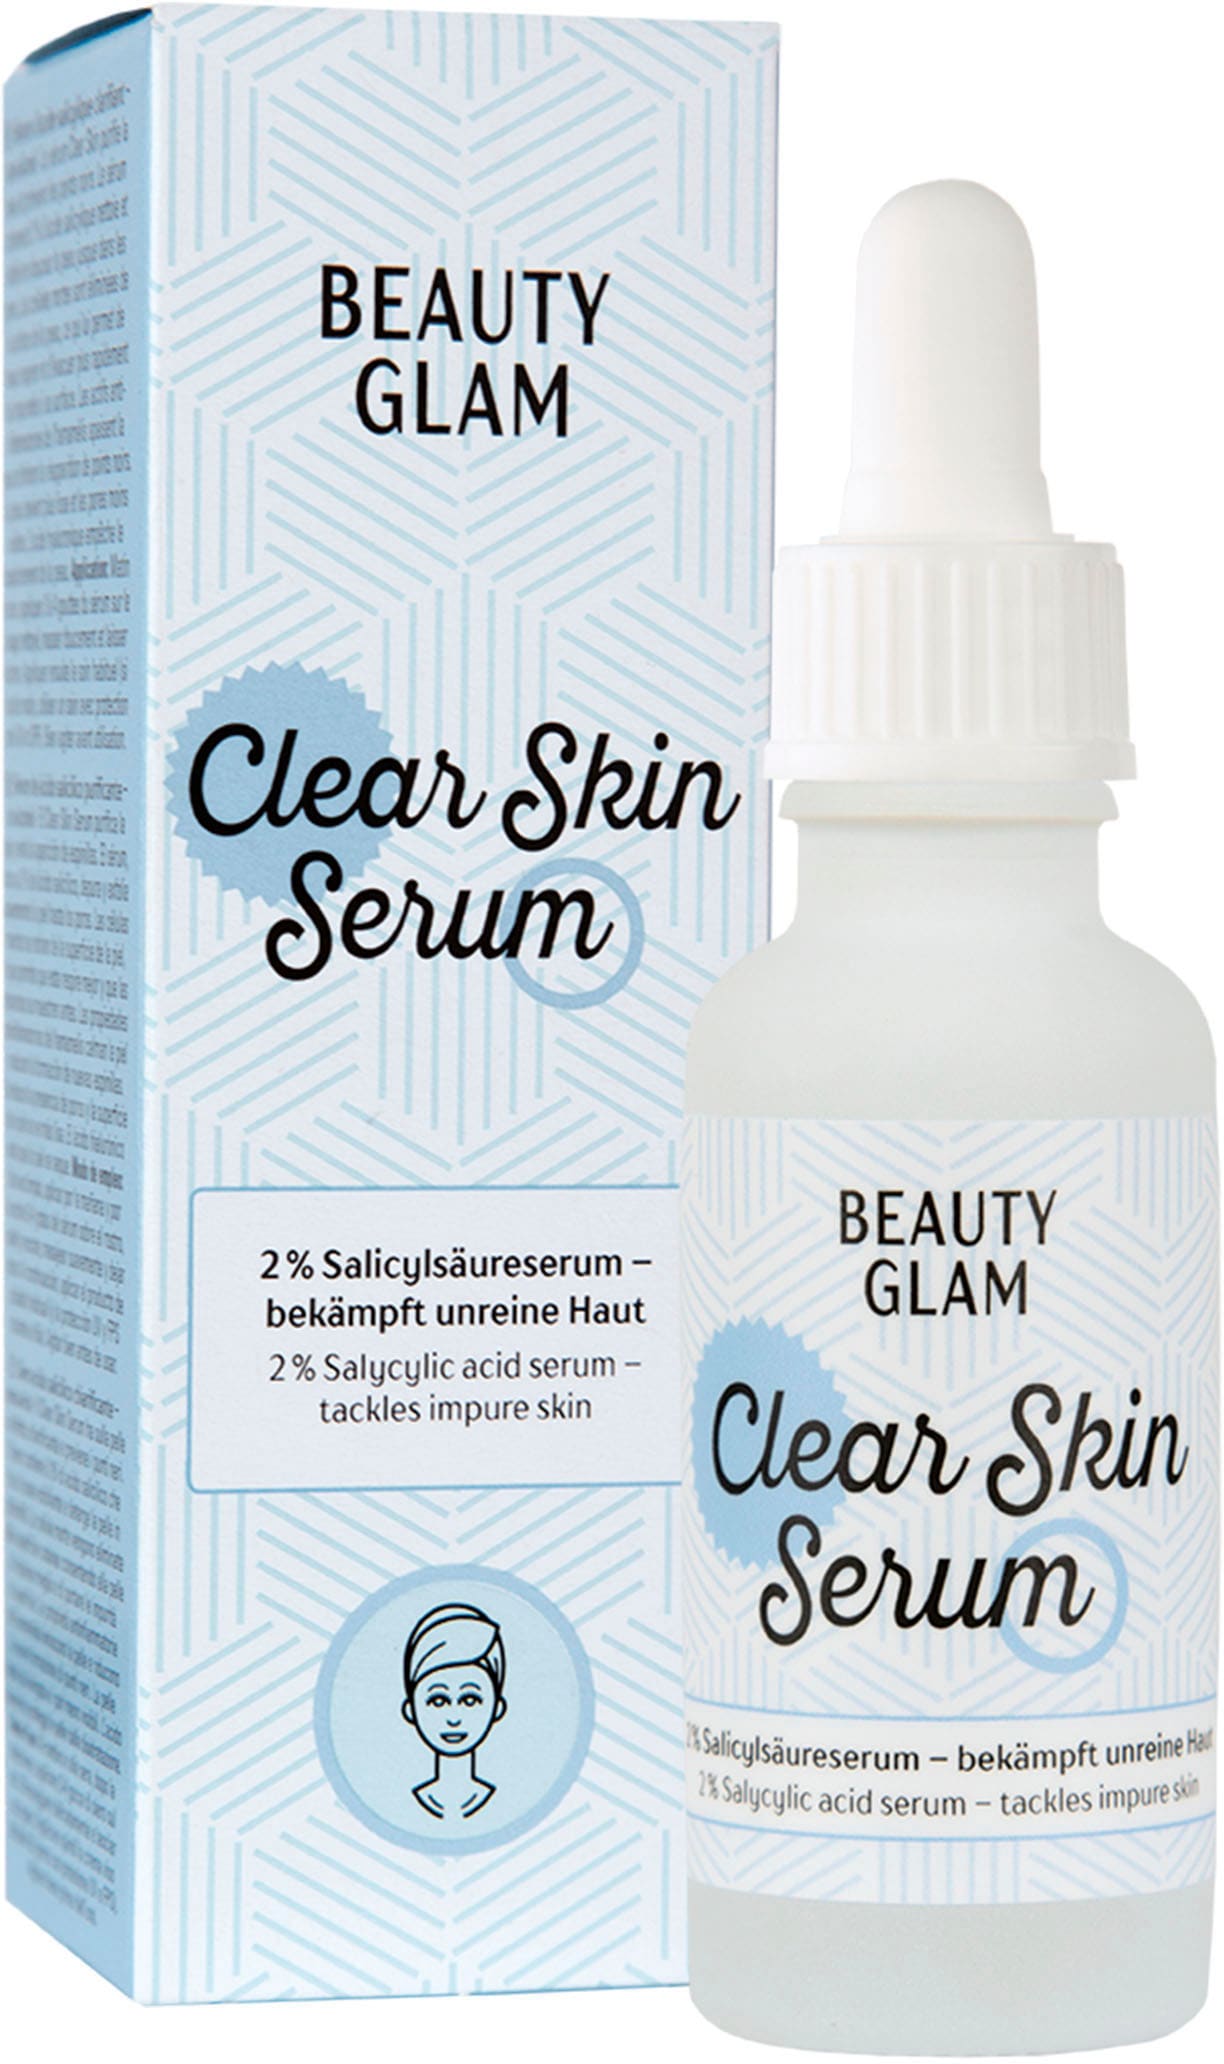 bestellen | »Beauty Glam Gesichtsserum BEAUTY Clear Skin Serum« BAUR GLAM online